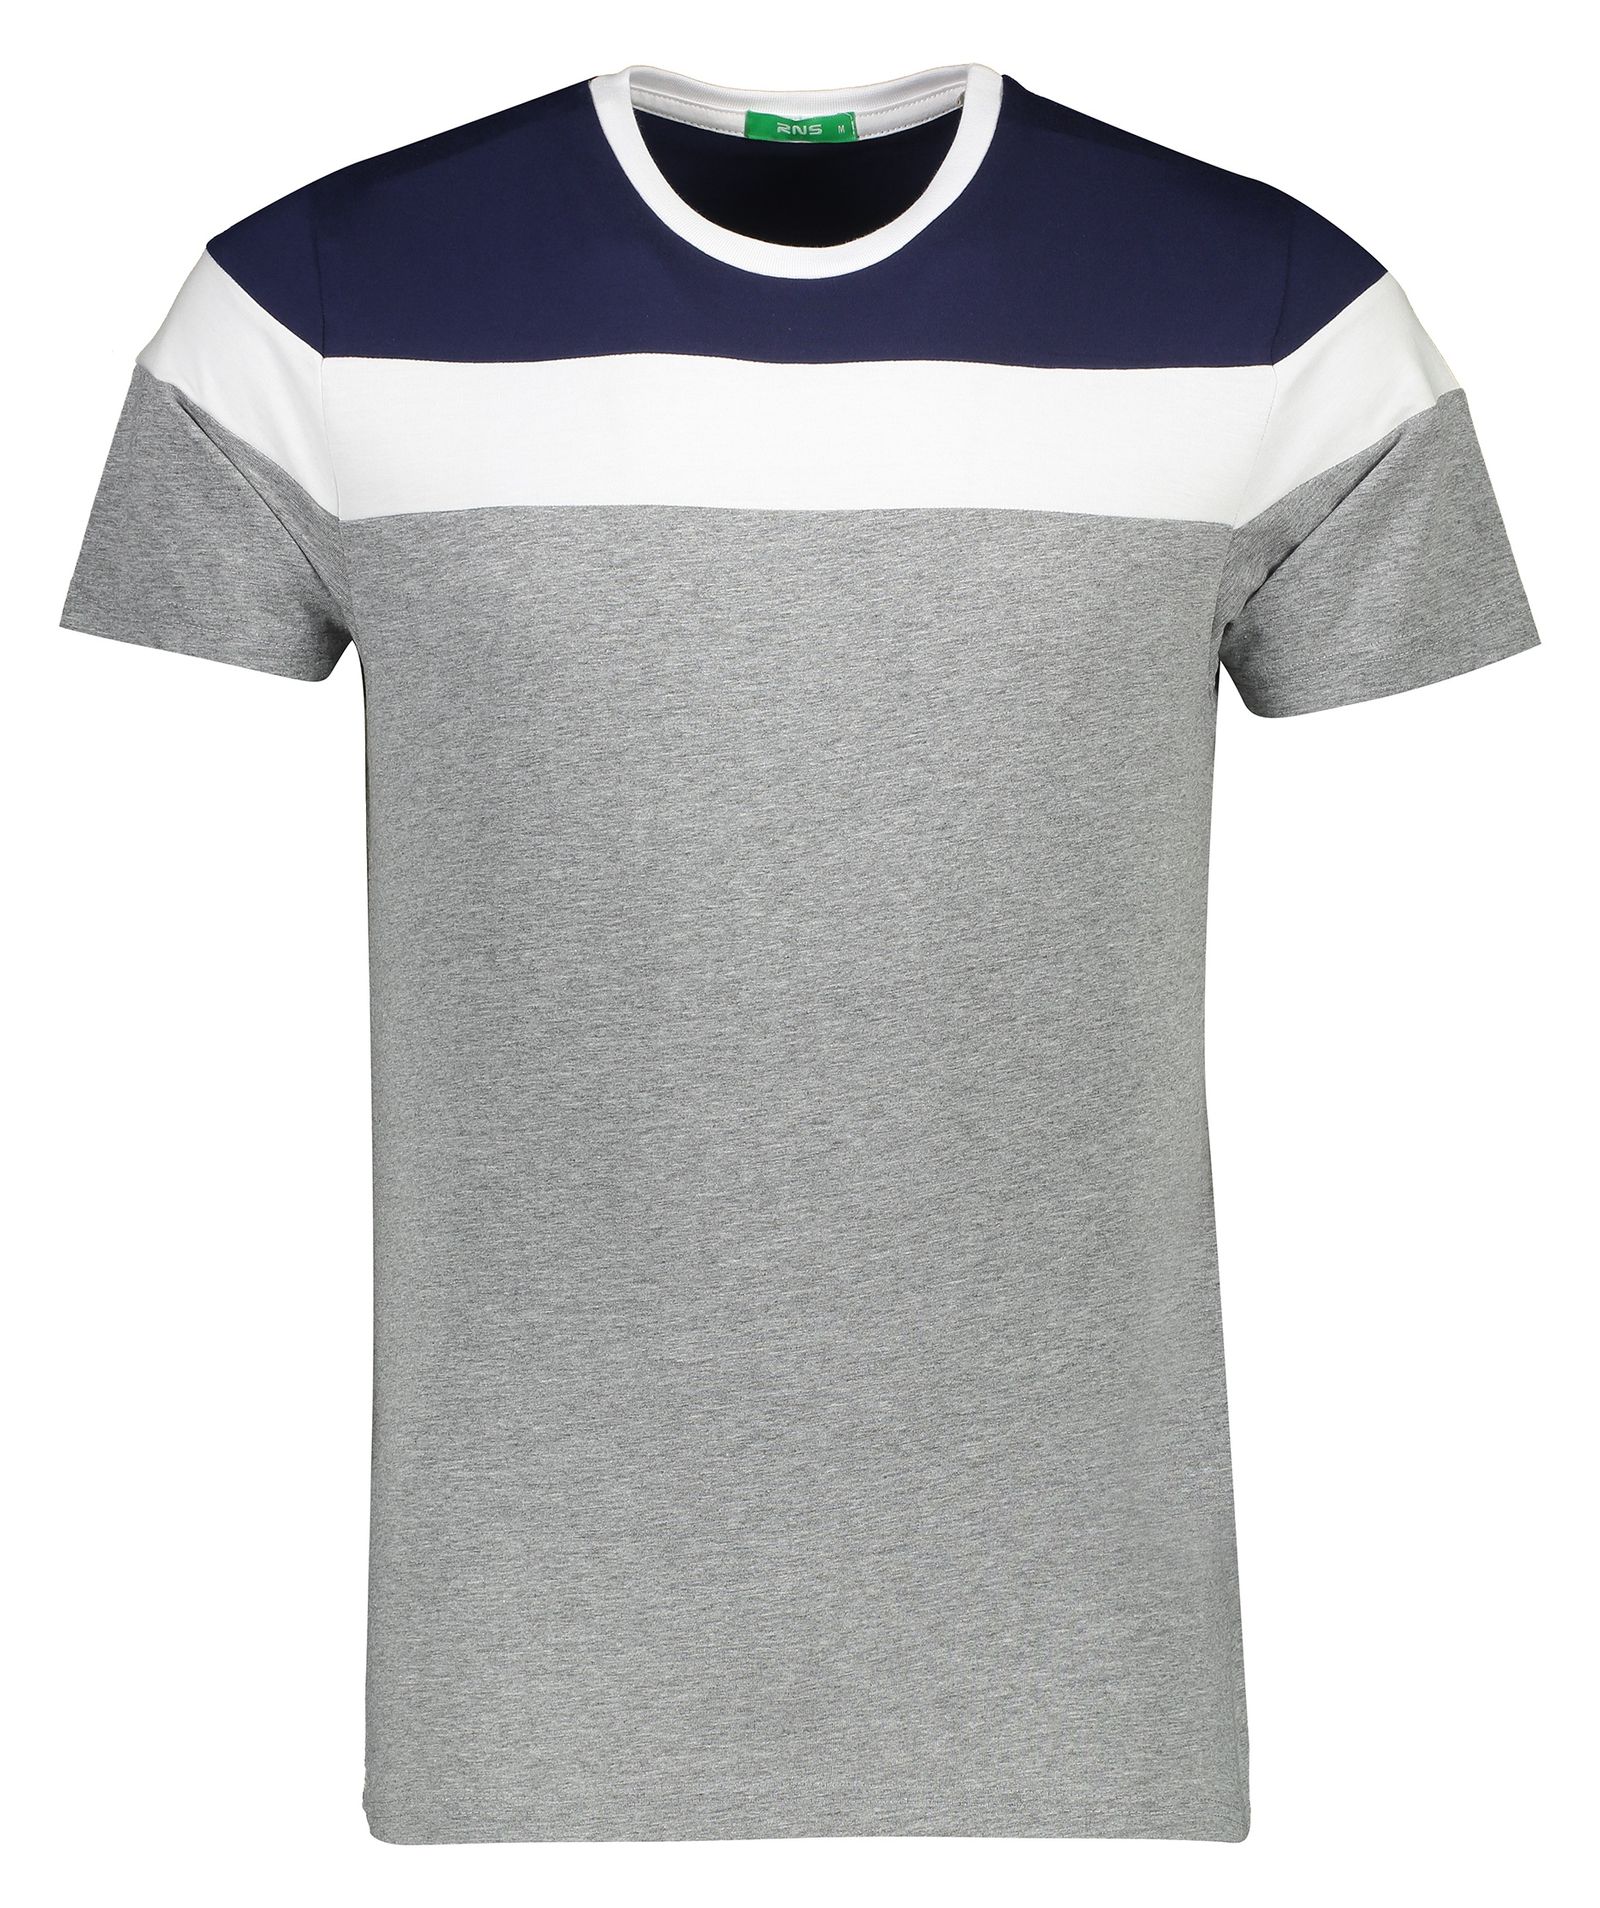 تی شرت مردانه آر ان اس مدل 1131107-59 -  - 1